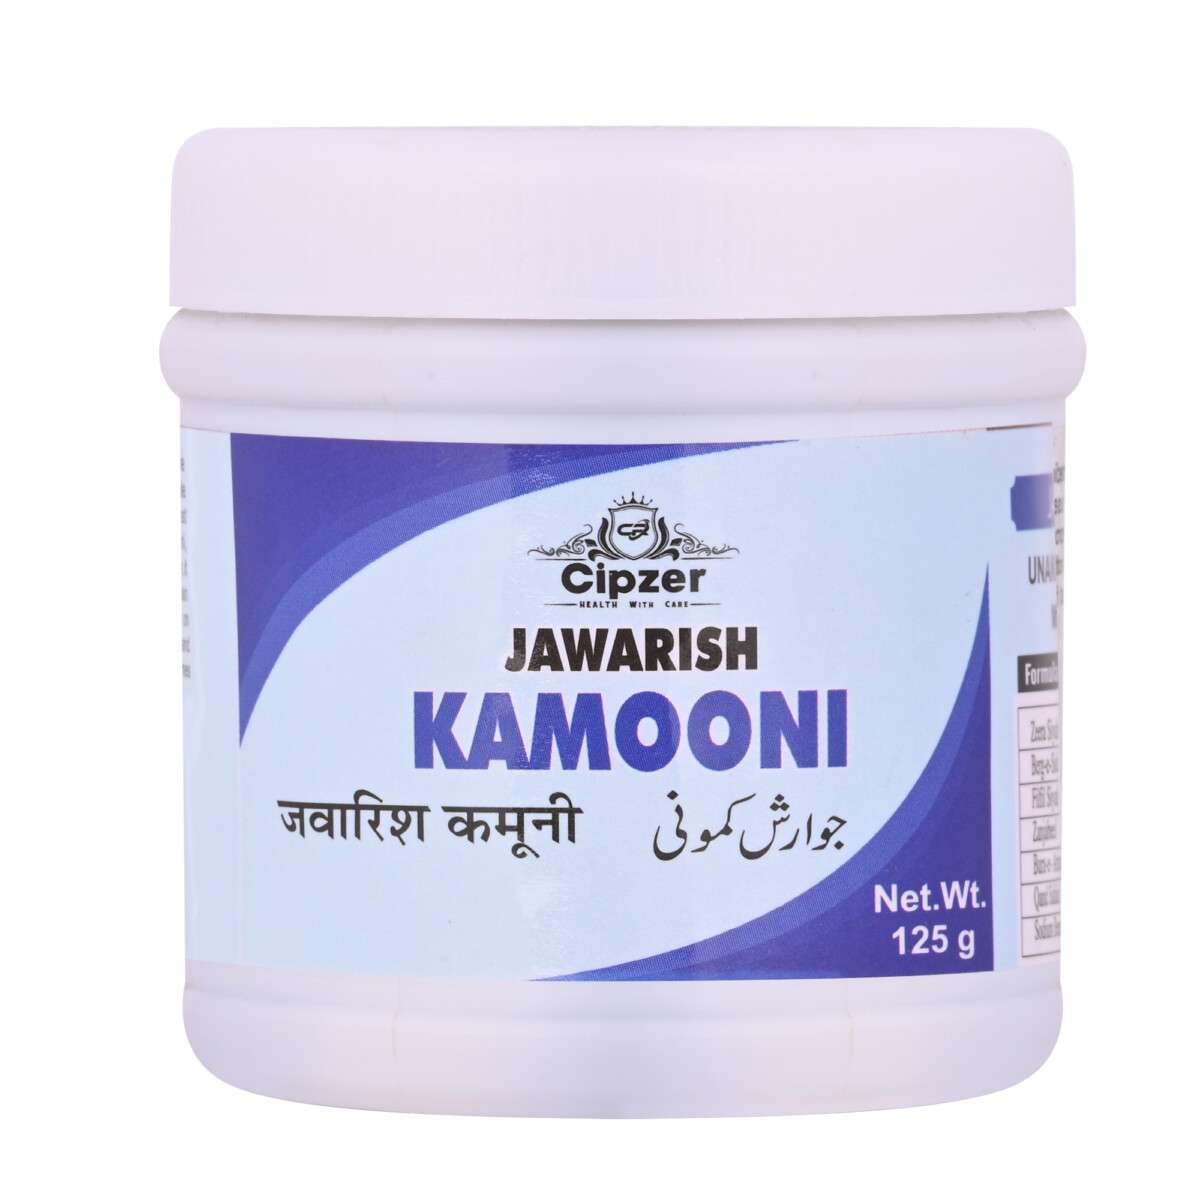 Cipzer Jawarish Kamooni